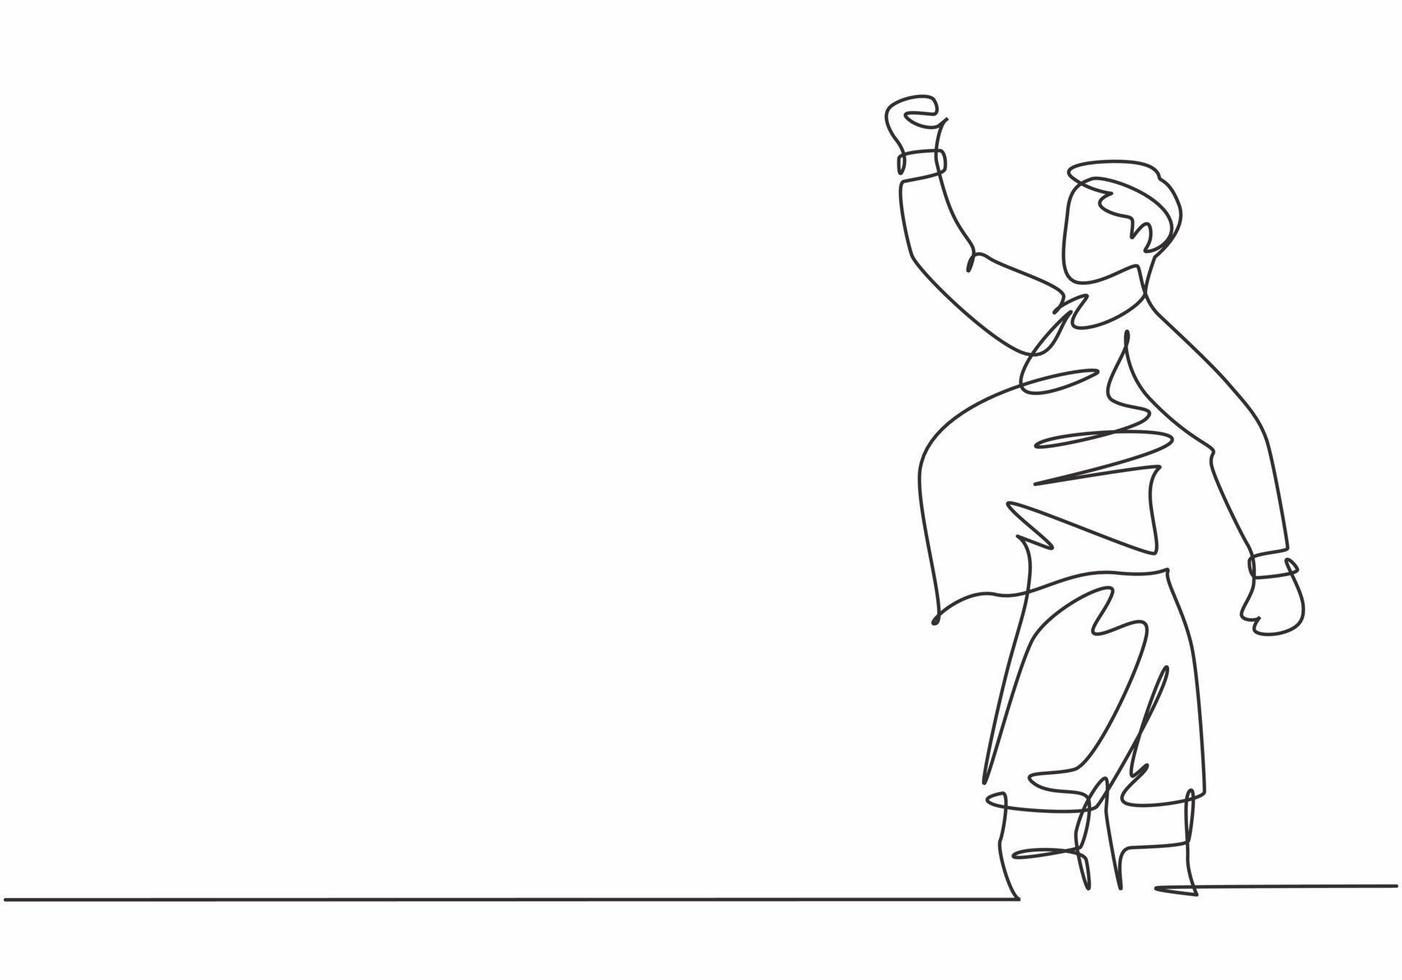 Un solo dibujo de línea continua de un joven jugador de fútbol deportivo hace un gesto de embarazo con la pelota después de marcar el gol. Concepto de celebración de gol de fútbol de partido diseño de dibujo de una línea ilustración vectorial vector